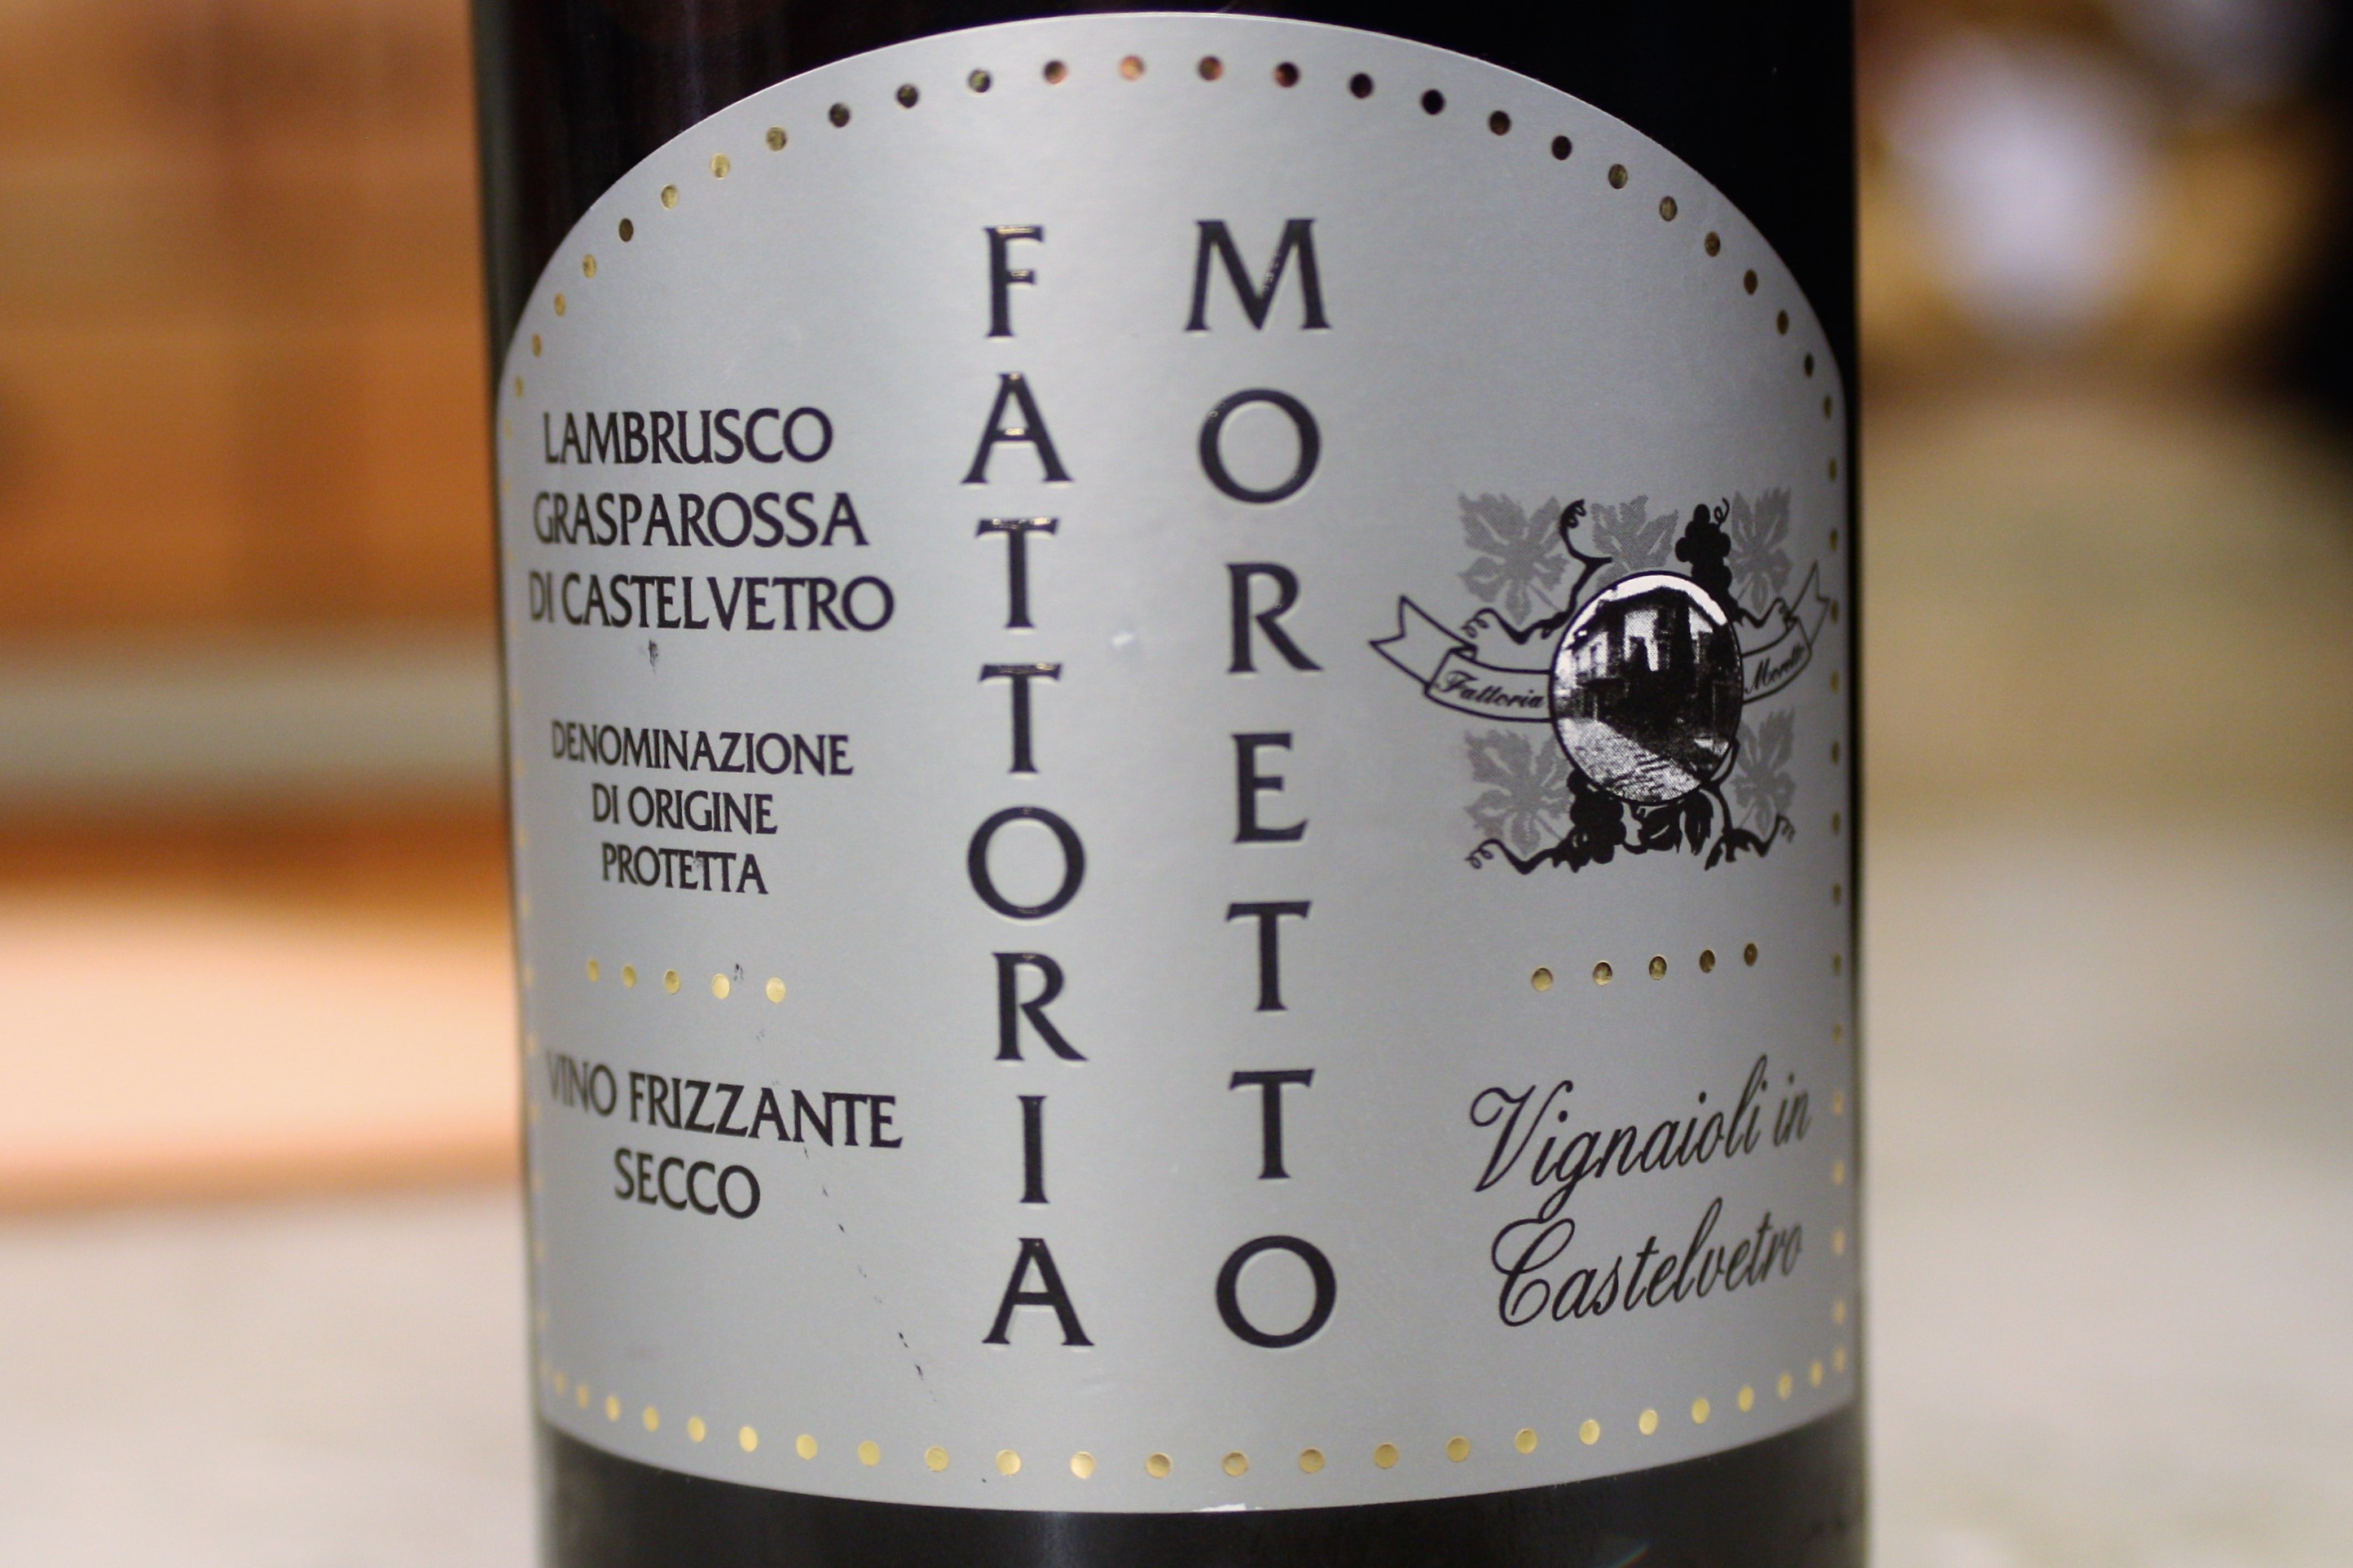 Fattoria Moretto, Lambrusco Grasparossa di Castelvetro Frizzante Secco (NV)